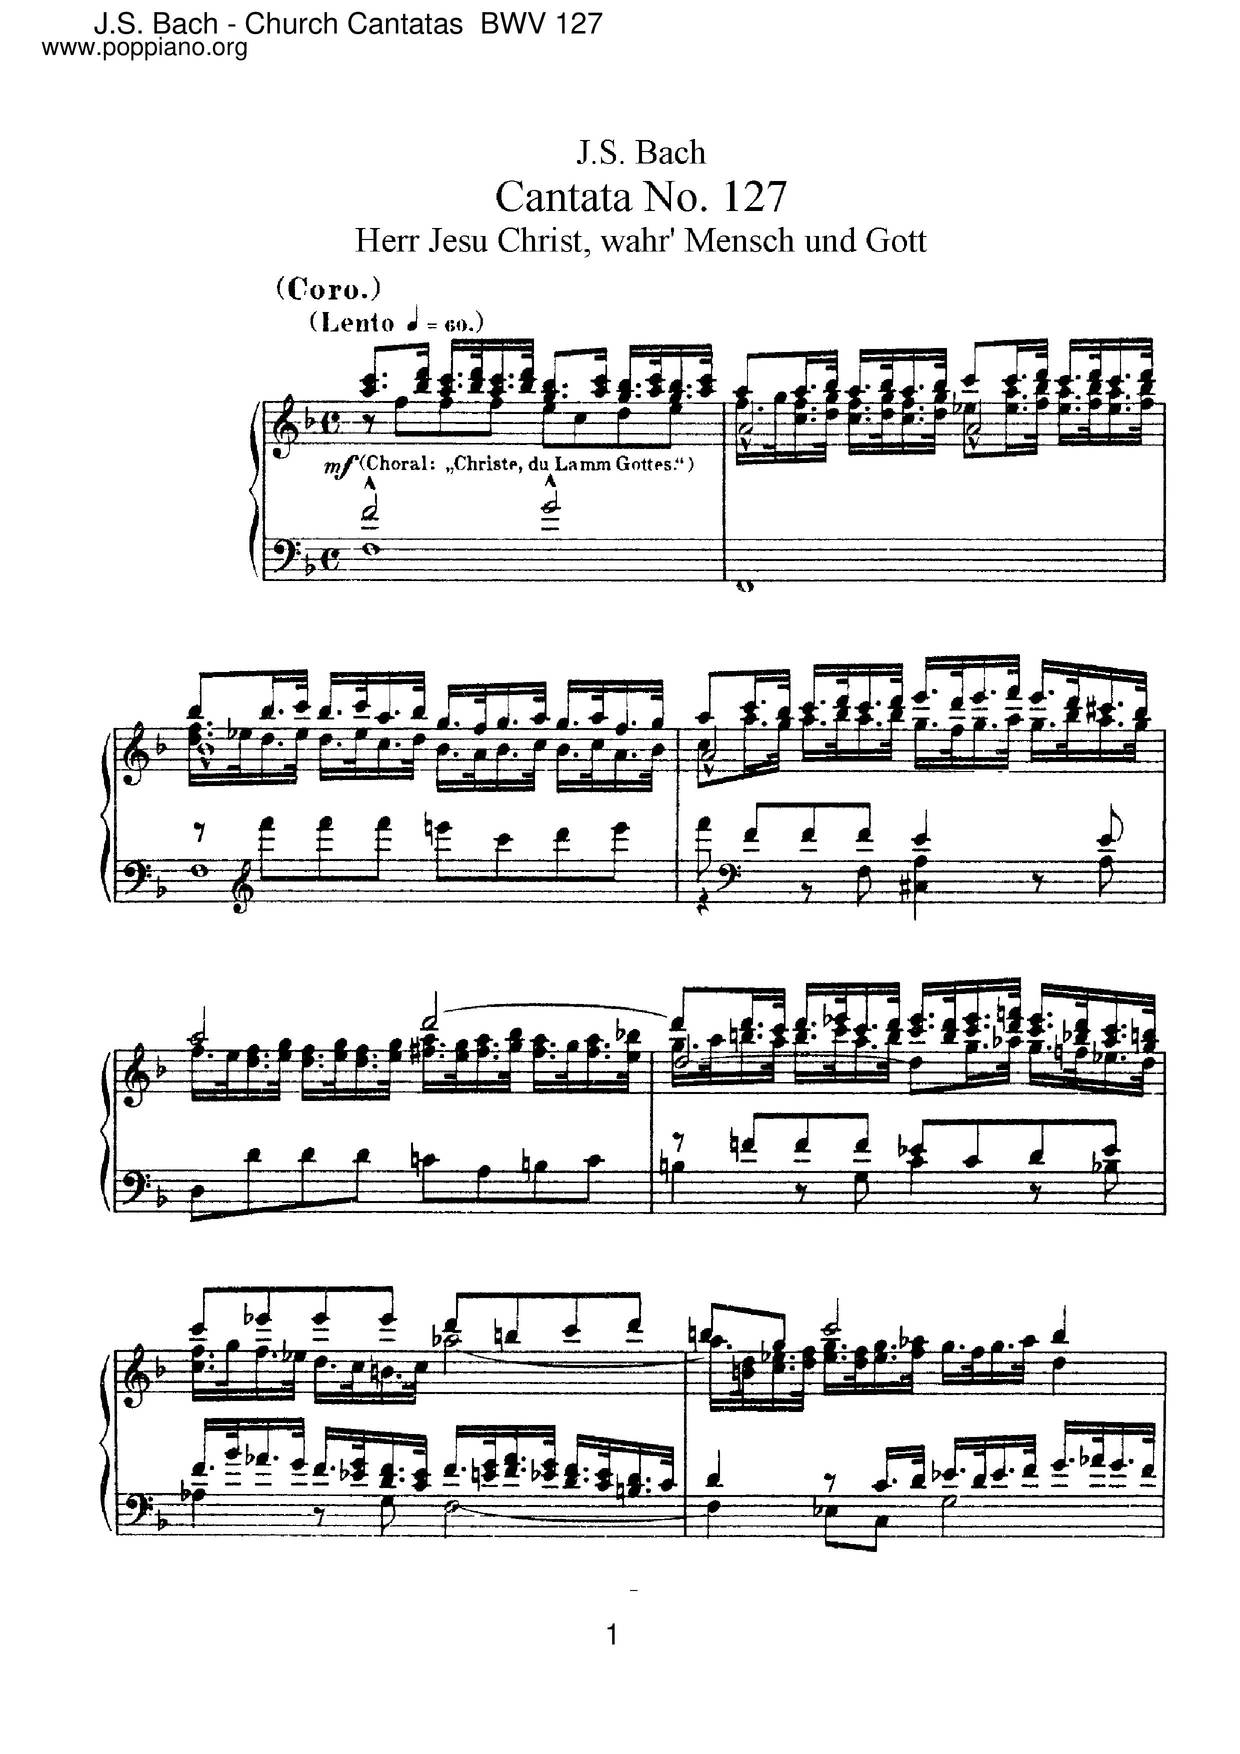 Herr Jesu Christ, Wahr' Mensch Und Gott, BWV 127 Score